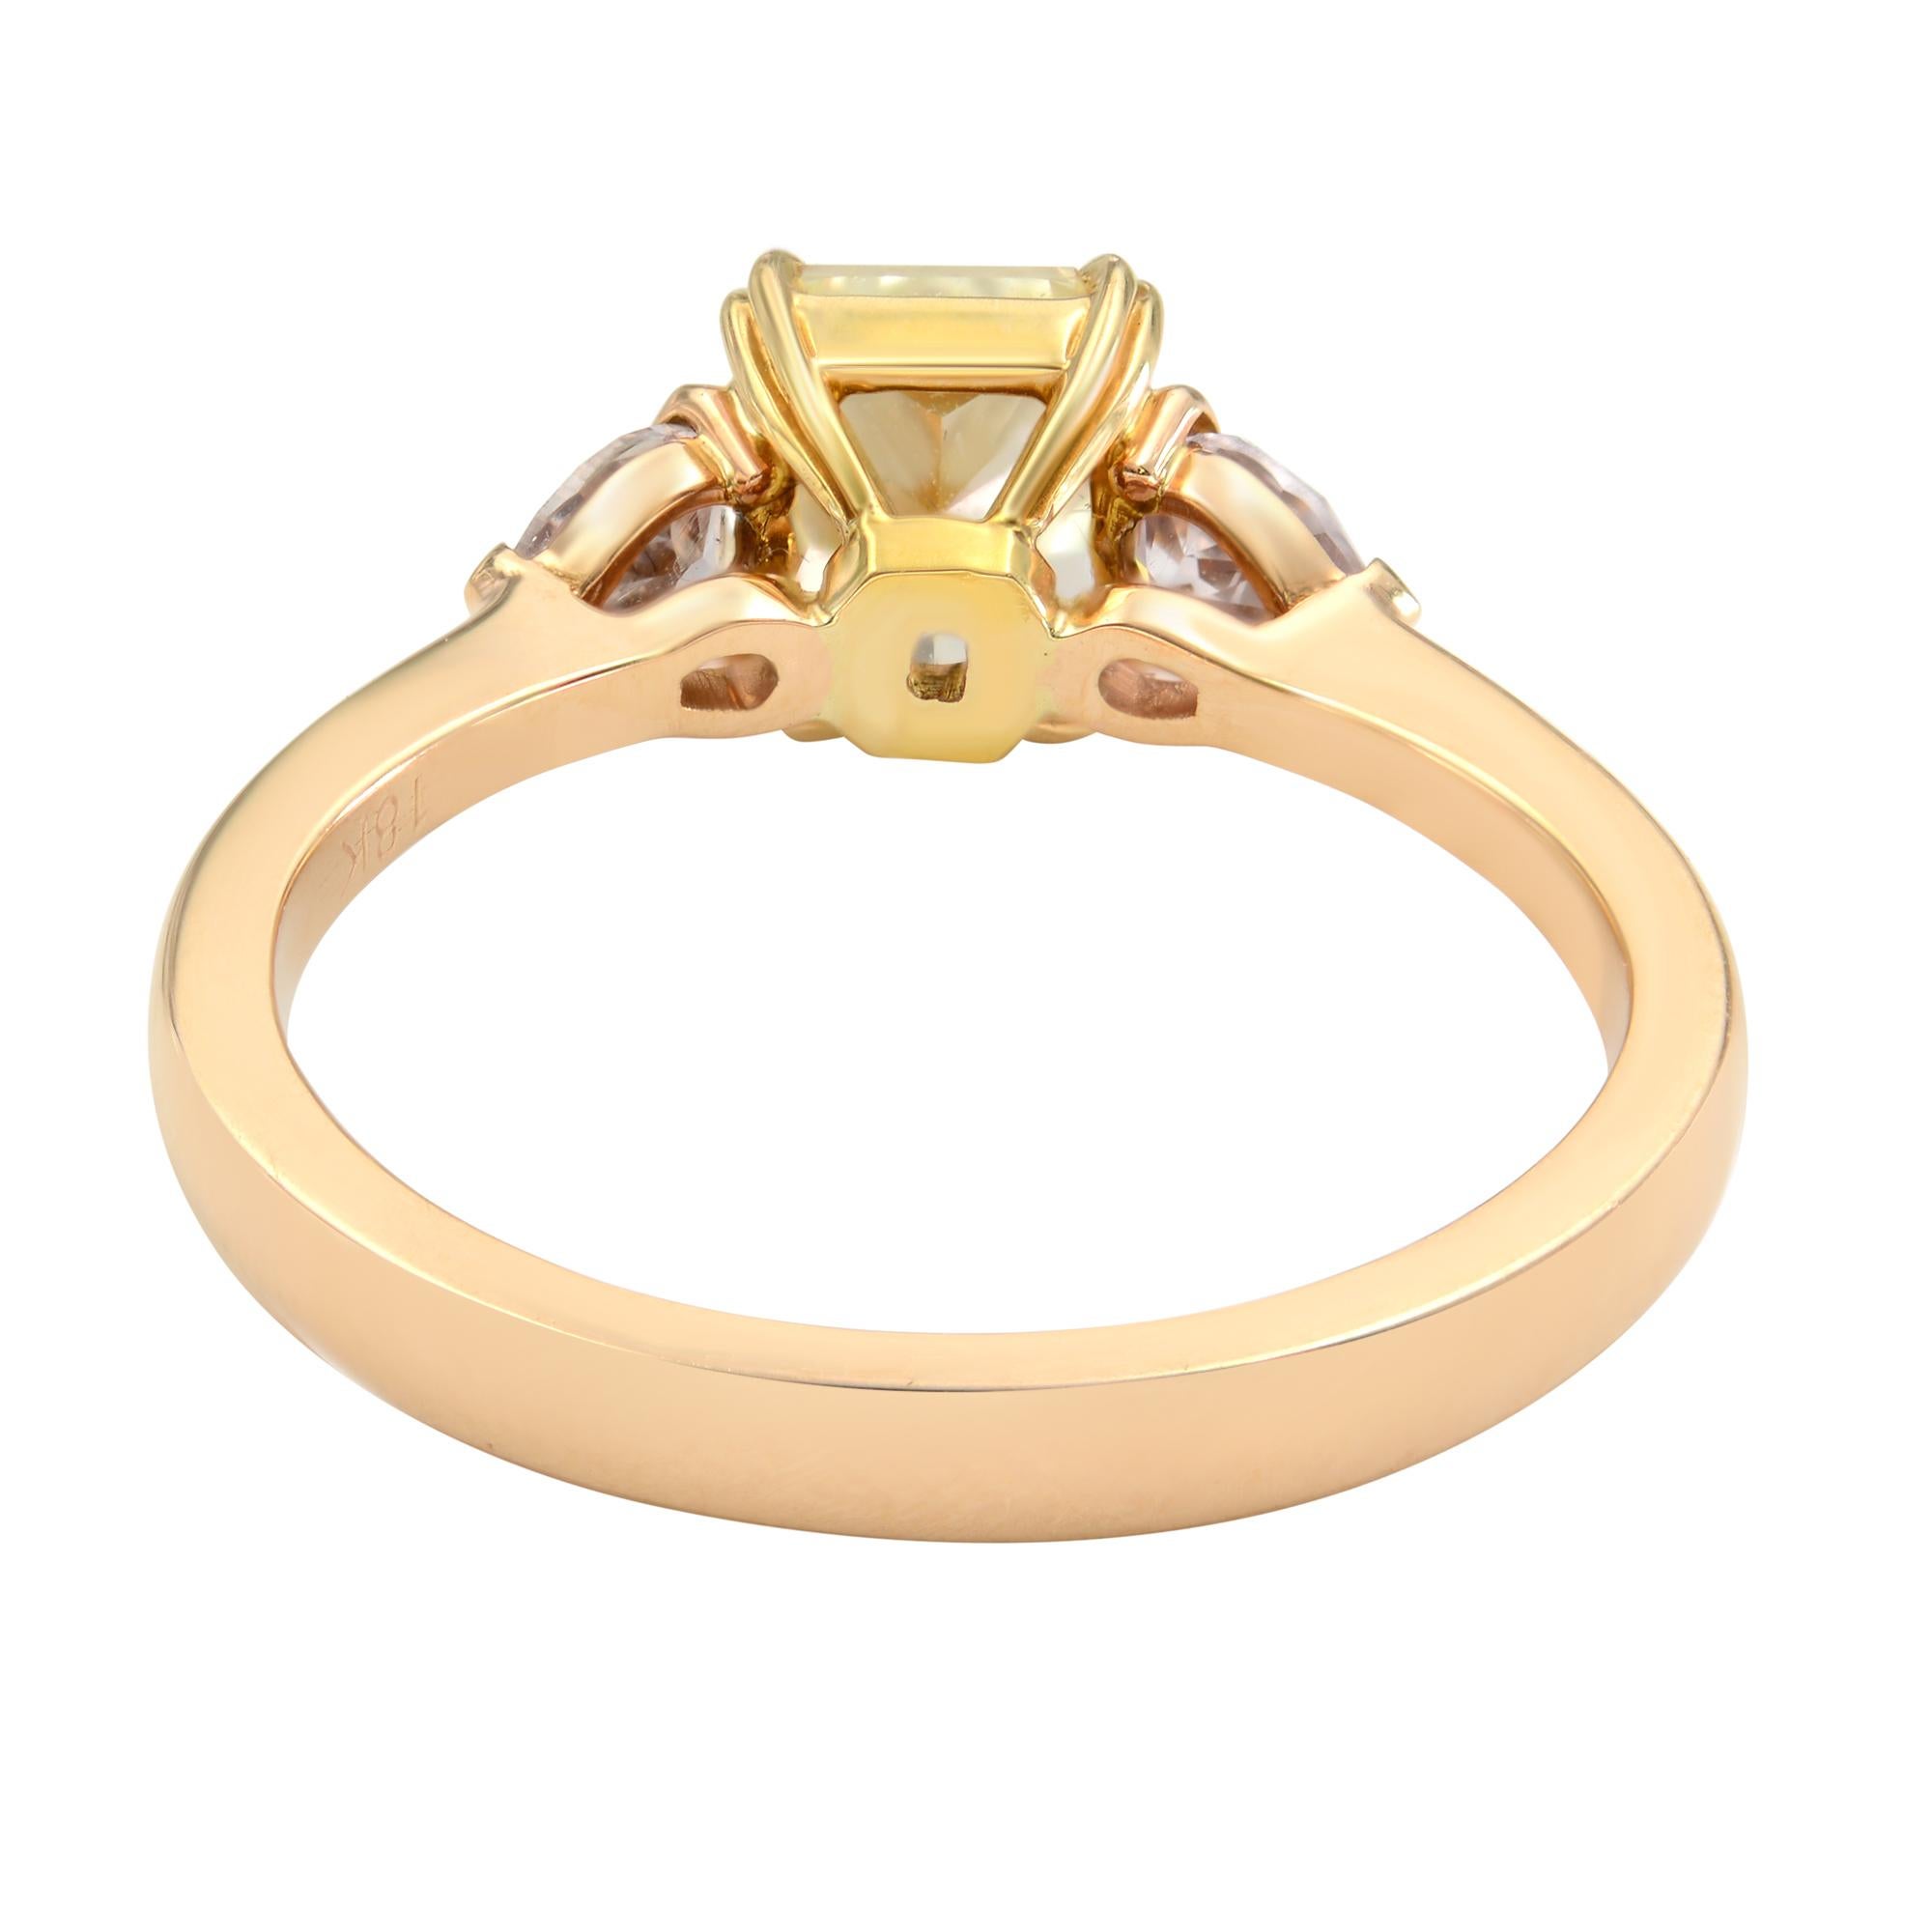 Modern Rachel Koen 18K Yellow Gold Asscher and Pear Shaped Three-Stone Ring 1.37 Carat